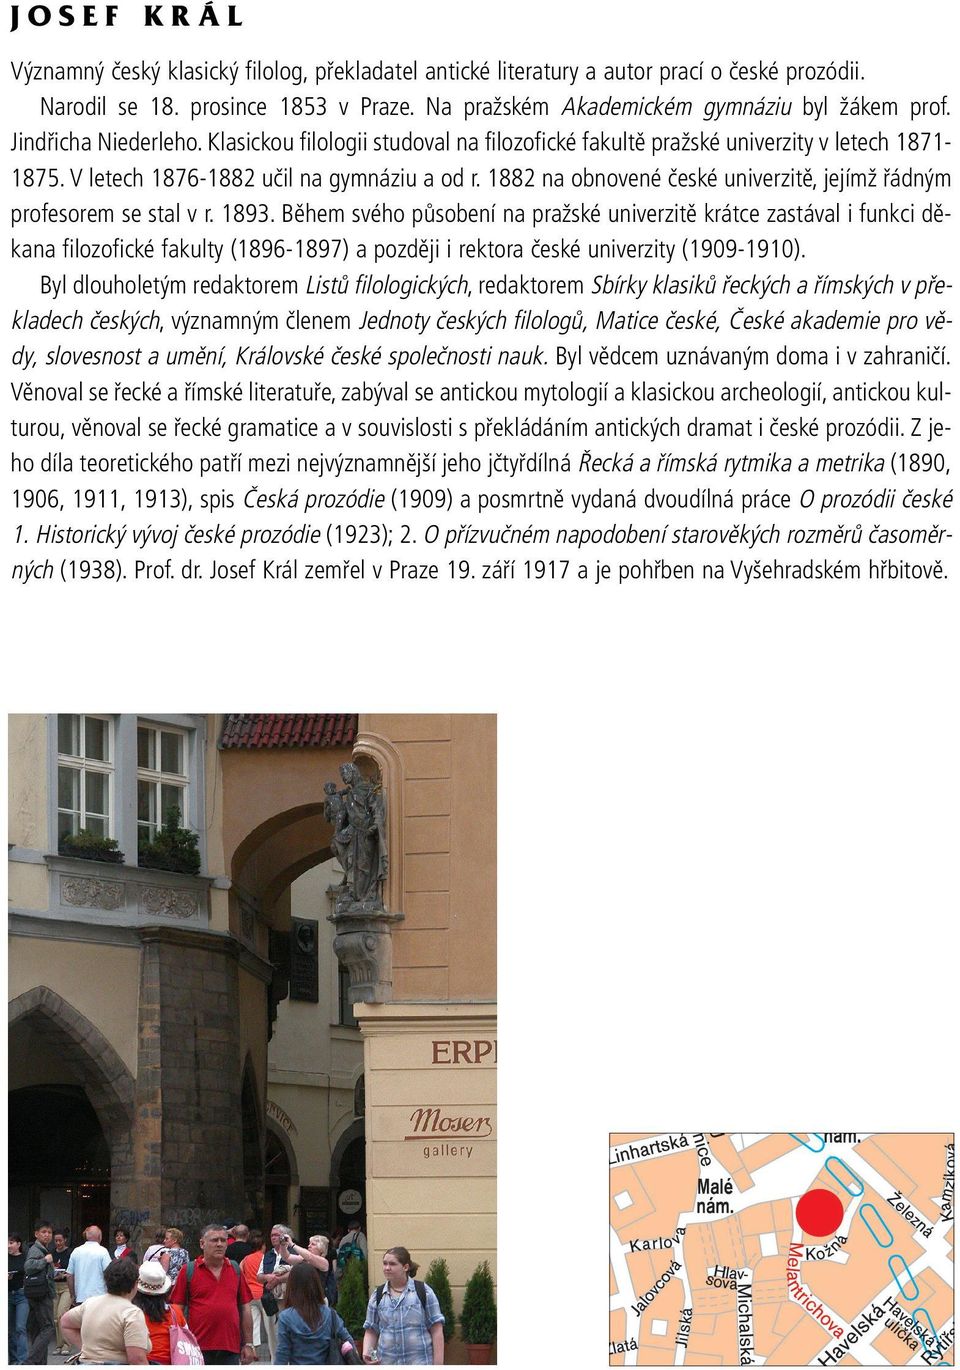 1882 na obnovené české univerzitě, jejímž řádným profesorem se stal v r. 1893.